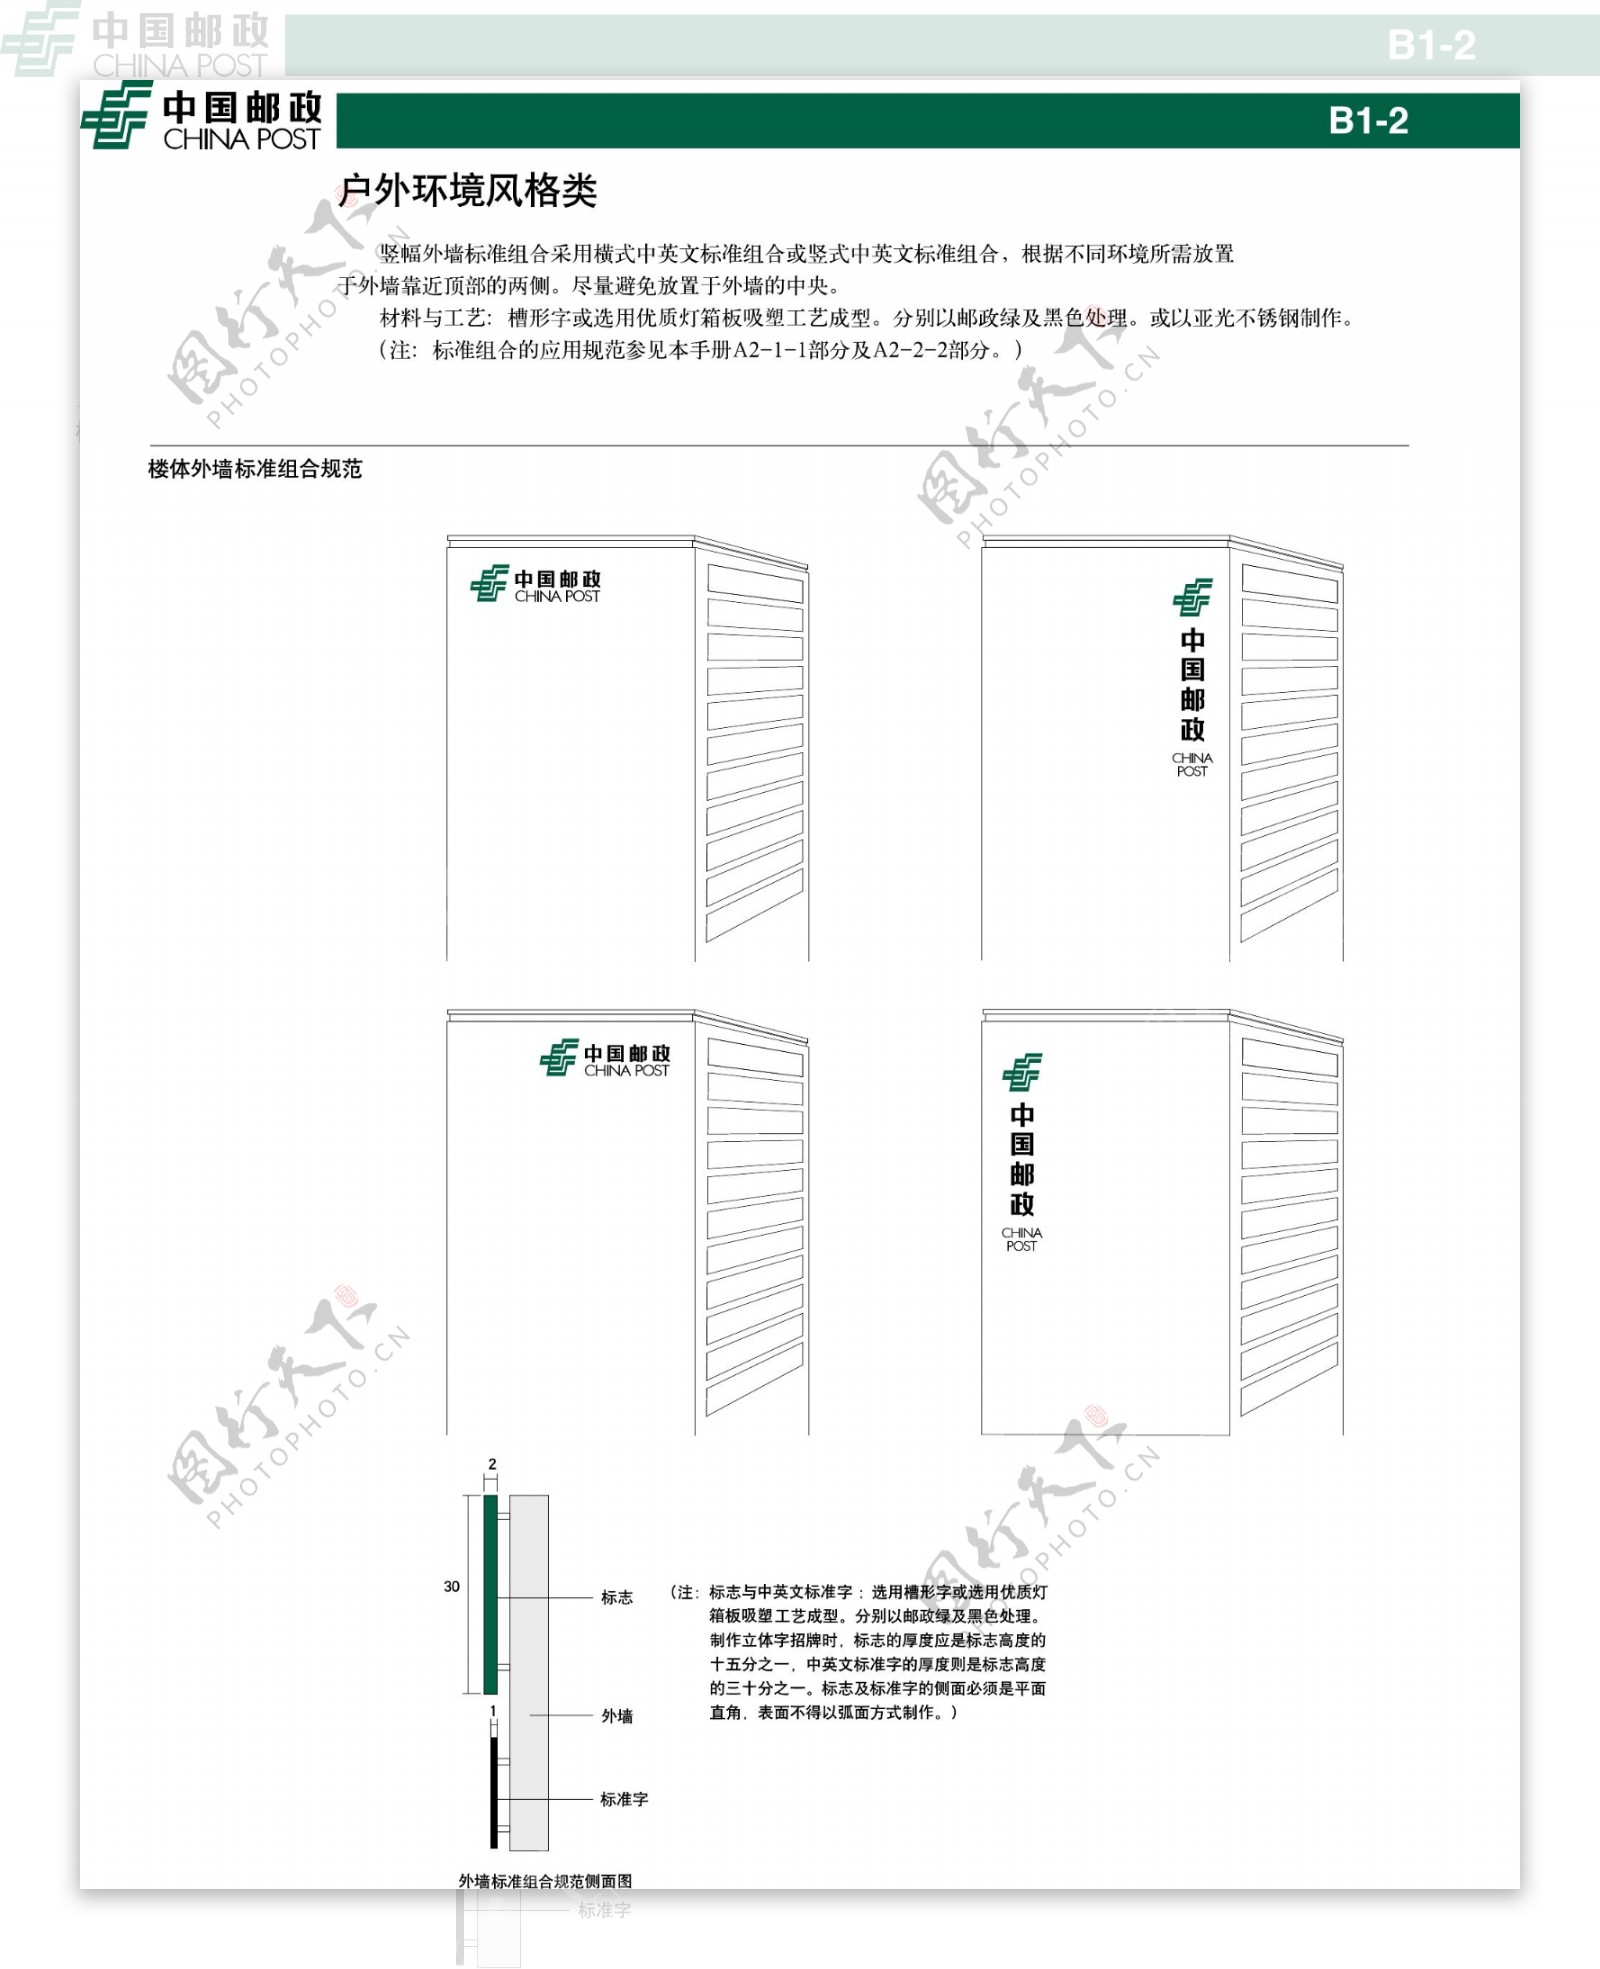 中国邮政楼体外墙标准组合规范